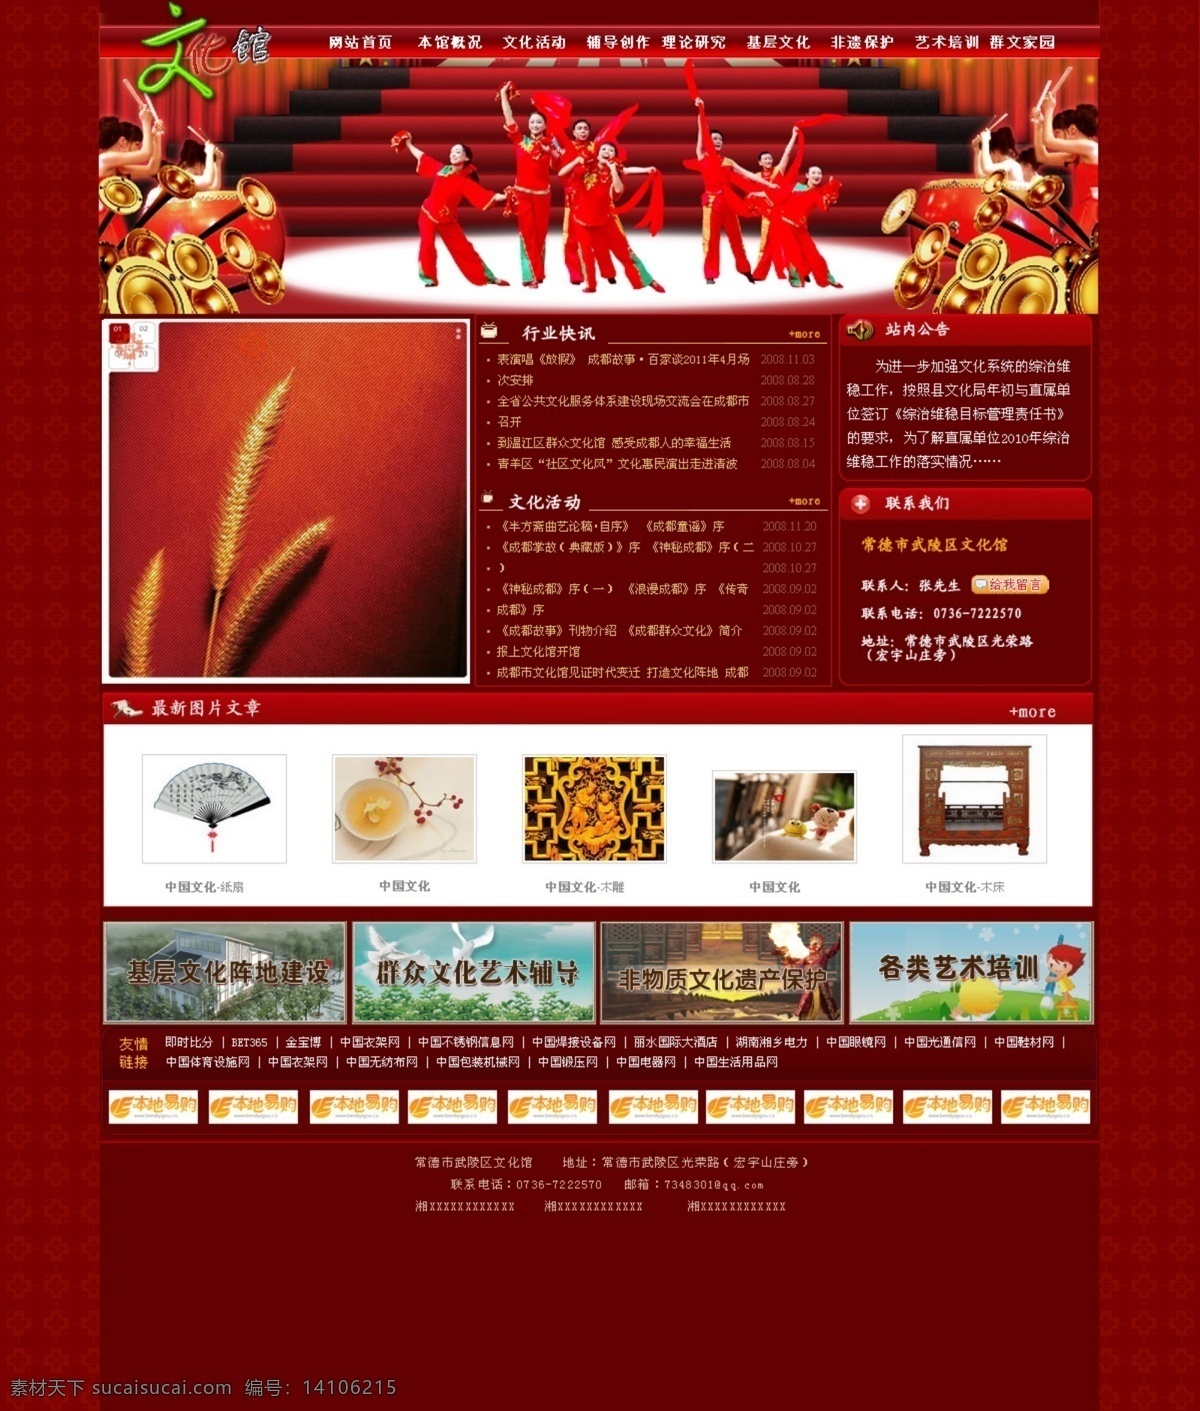 文化馆 网页模板 网页模版 网站 喜庆 源文件 中文模版 首页 秧歌 网页素材